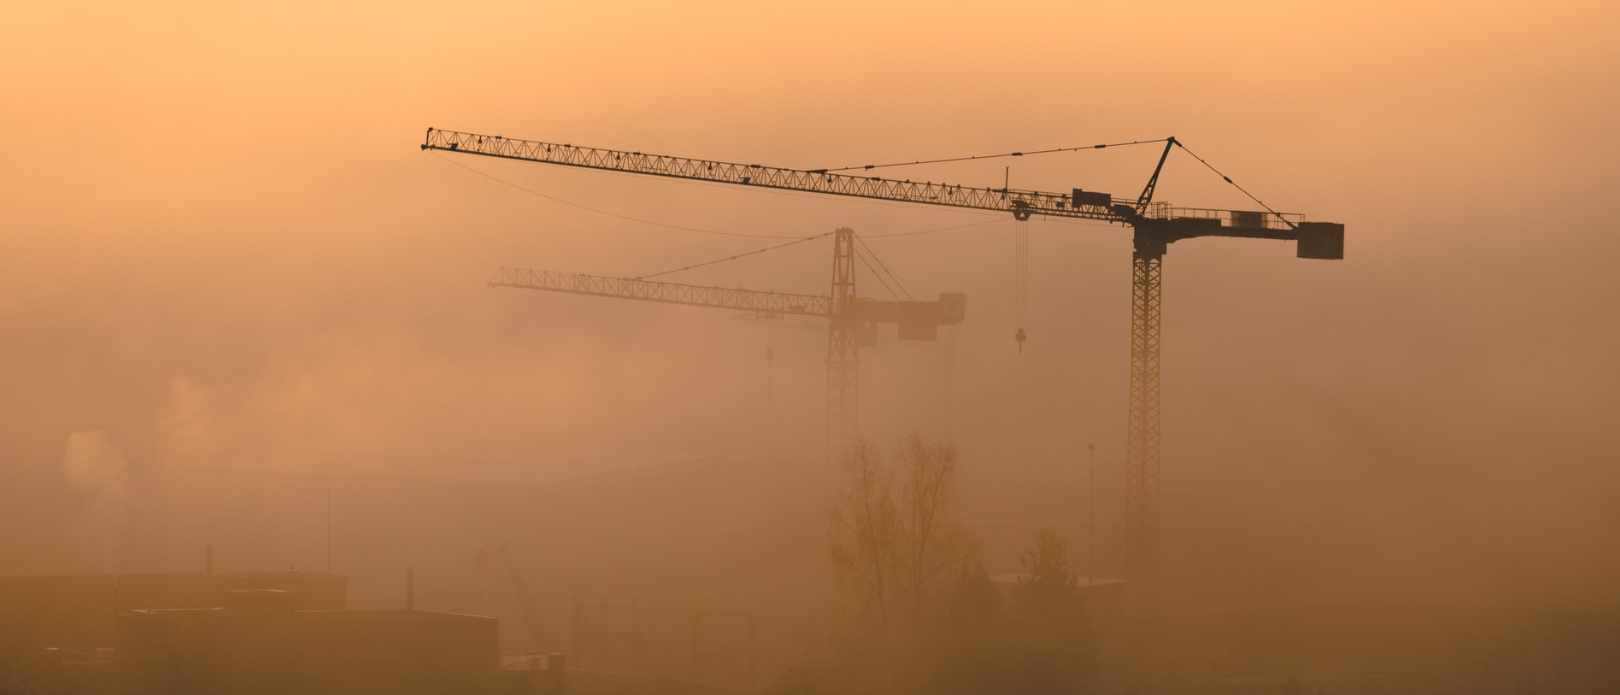 Two cranes seen through smog